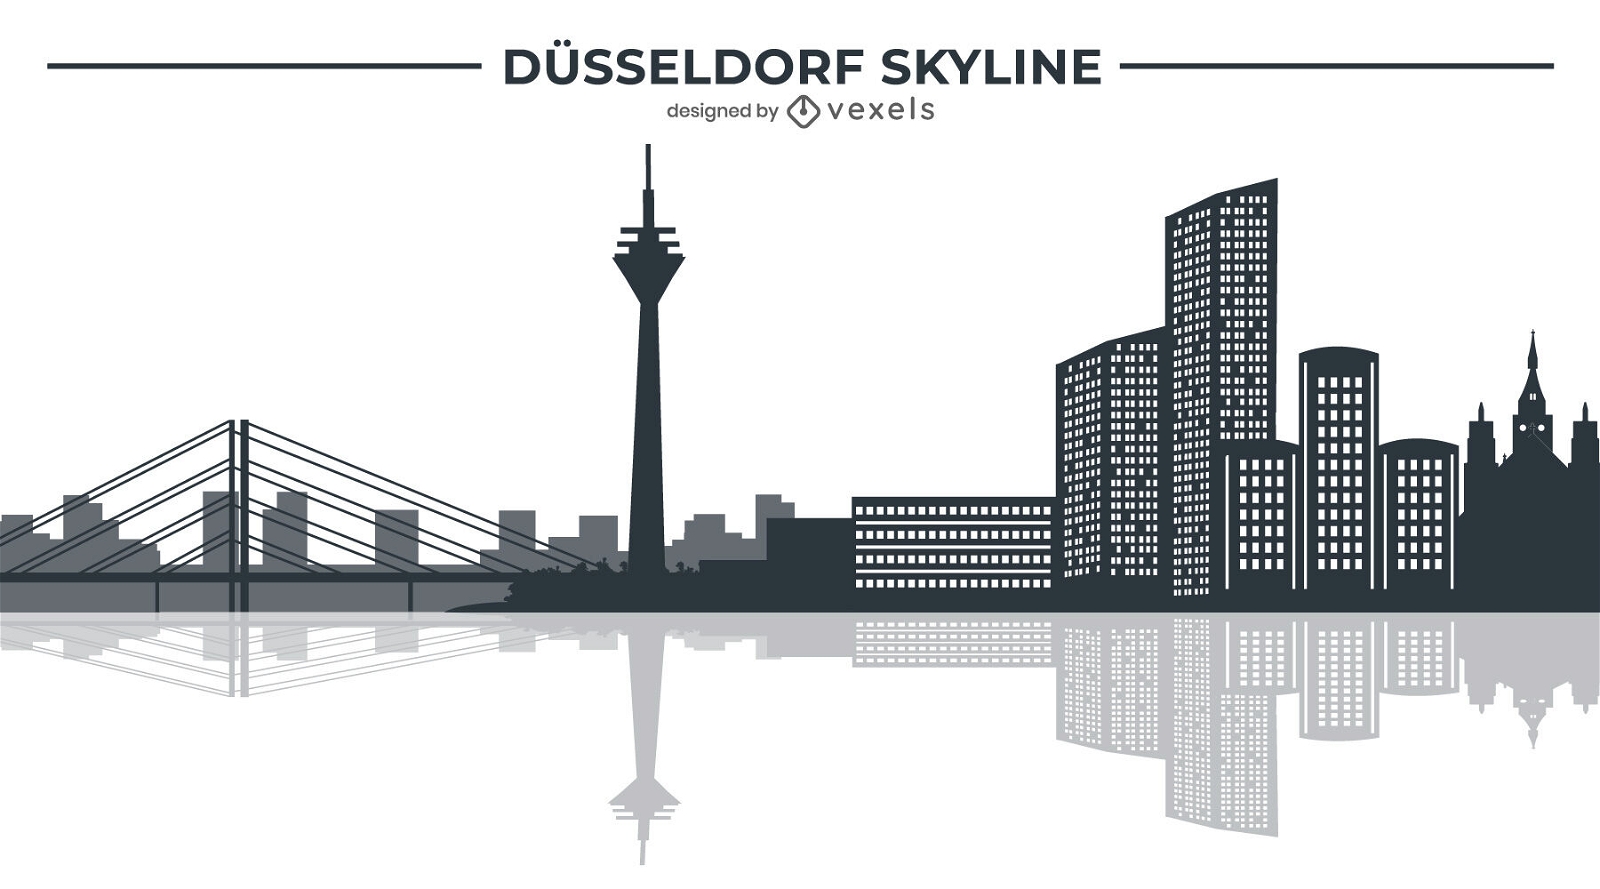 Dusseldorf German city skyline illustration